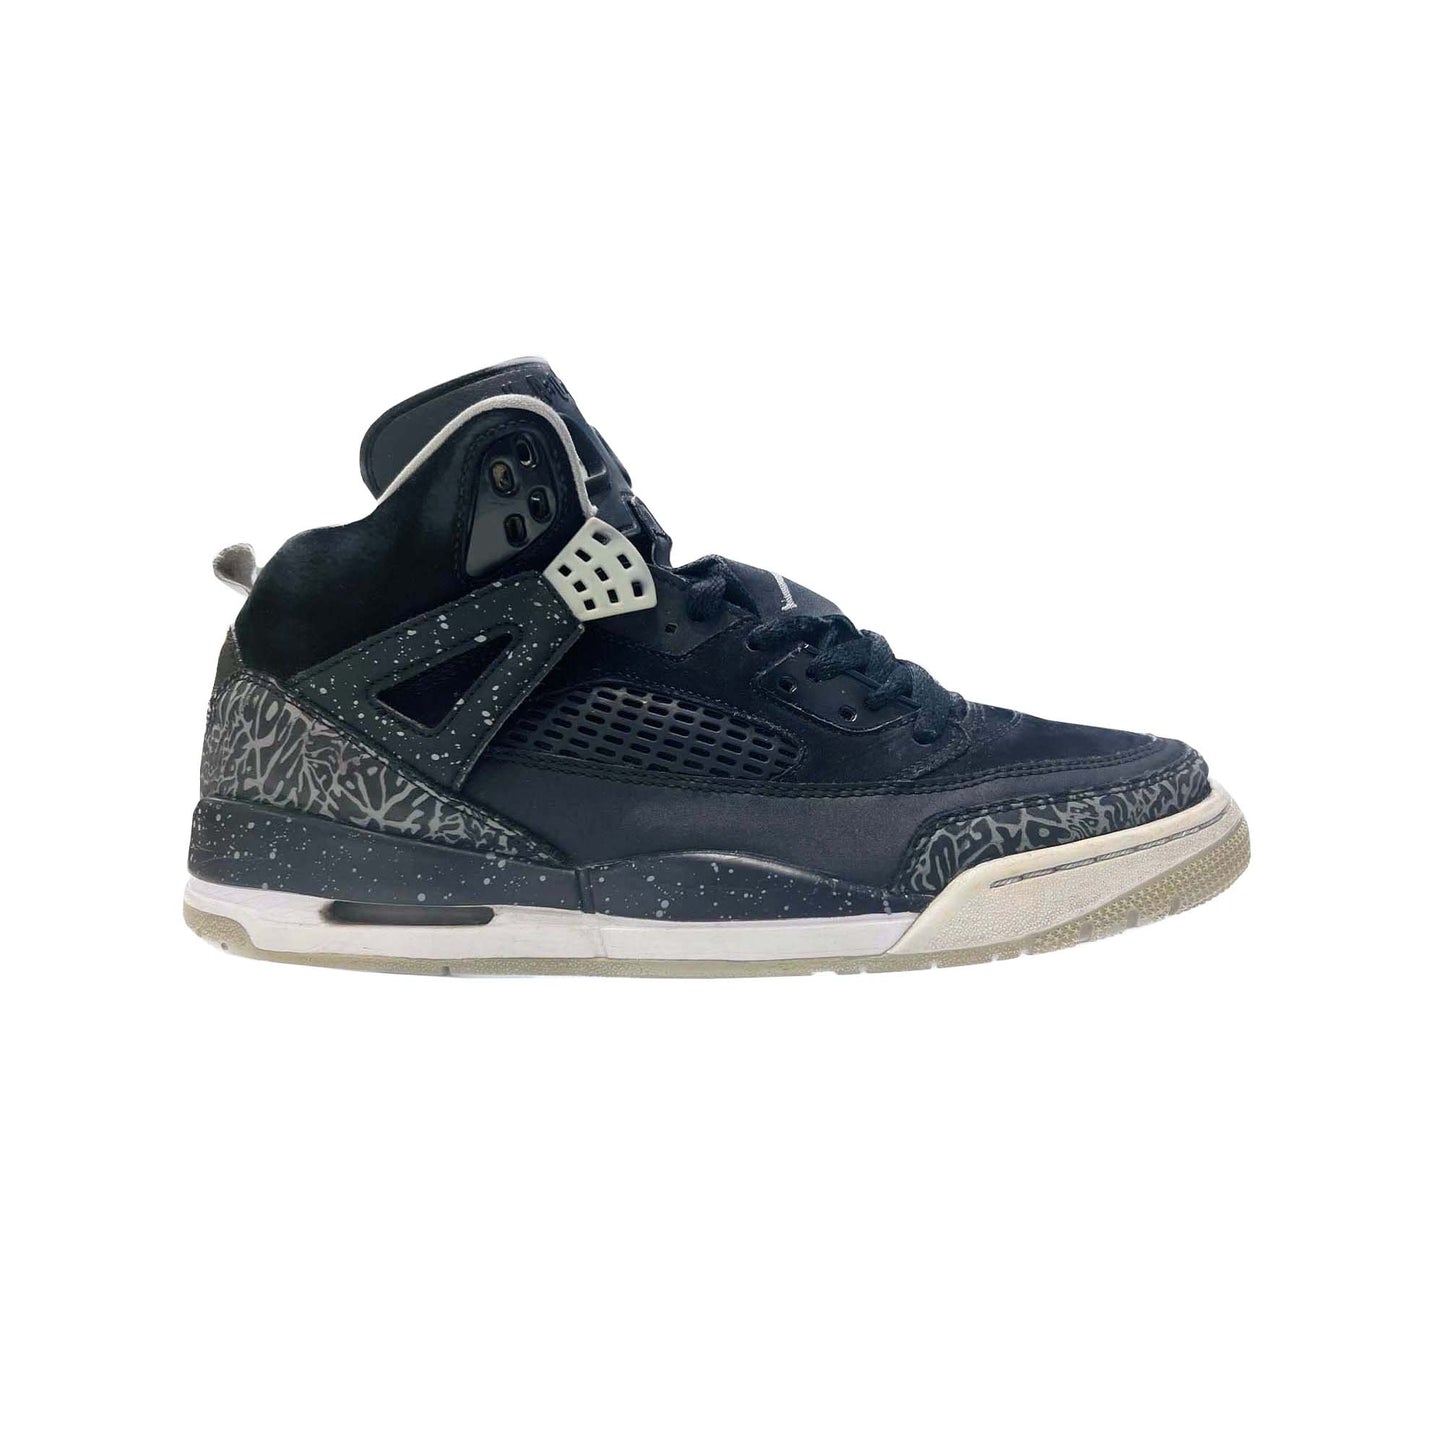 Nike Air Jordan Spizike "Oreo" UK10 *PL